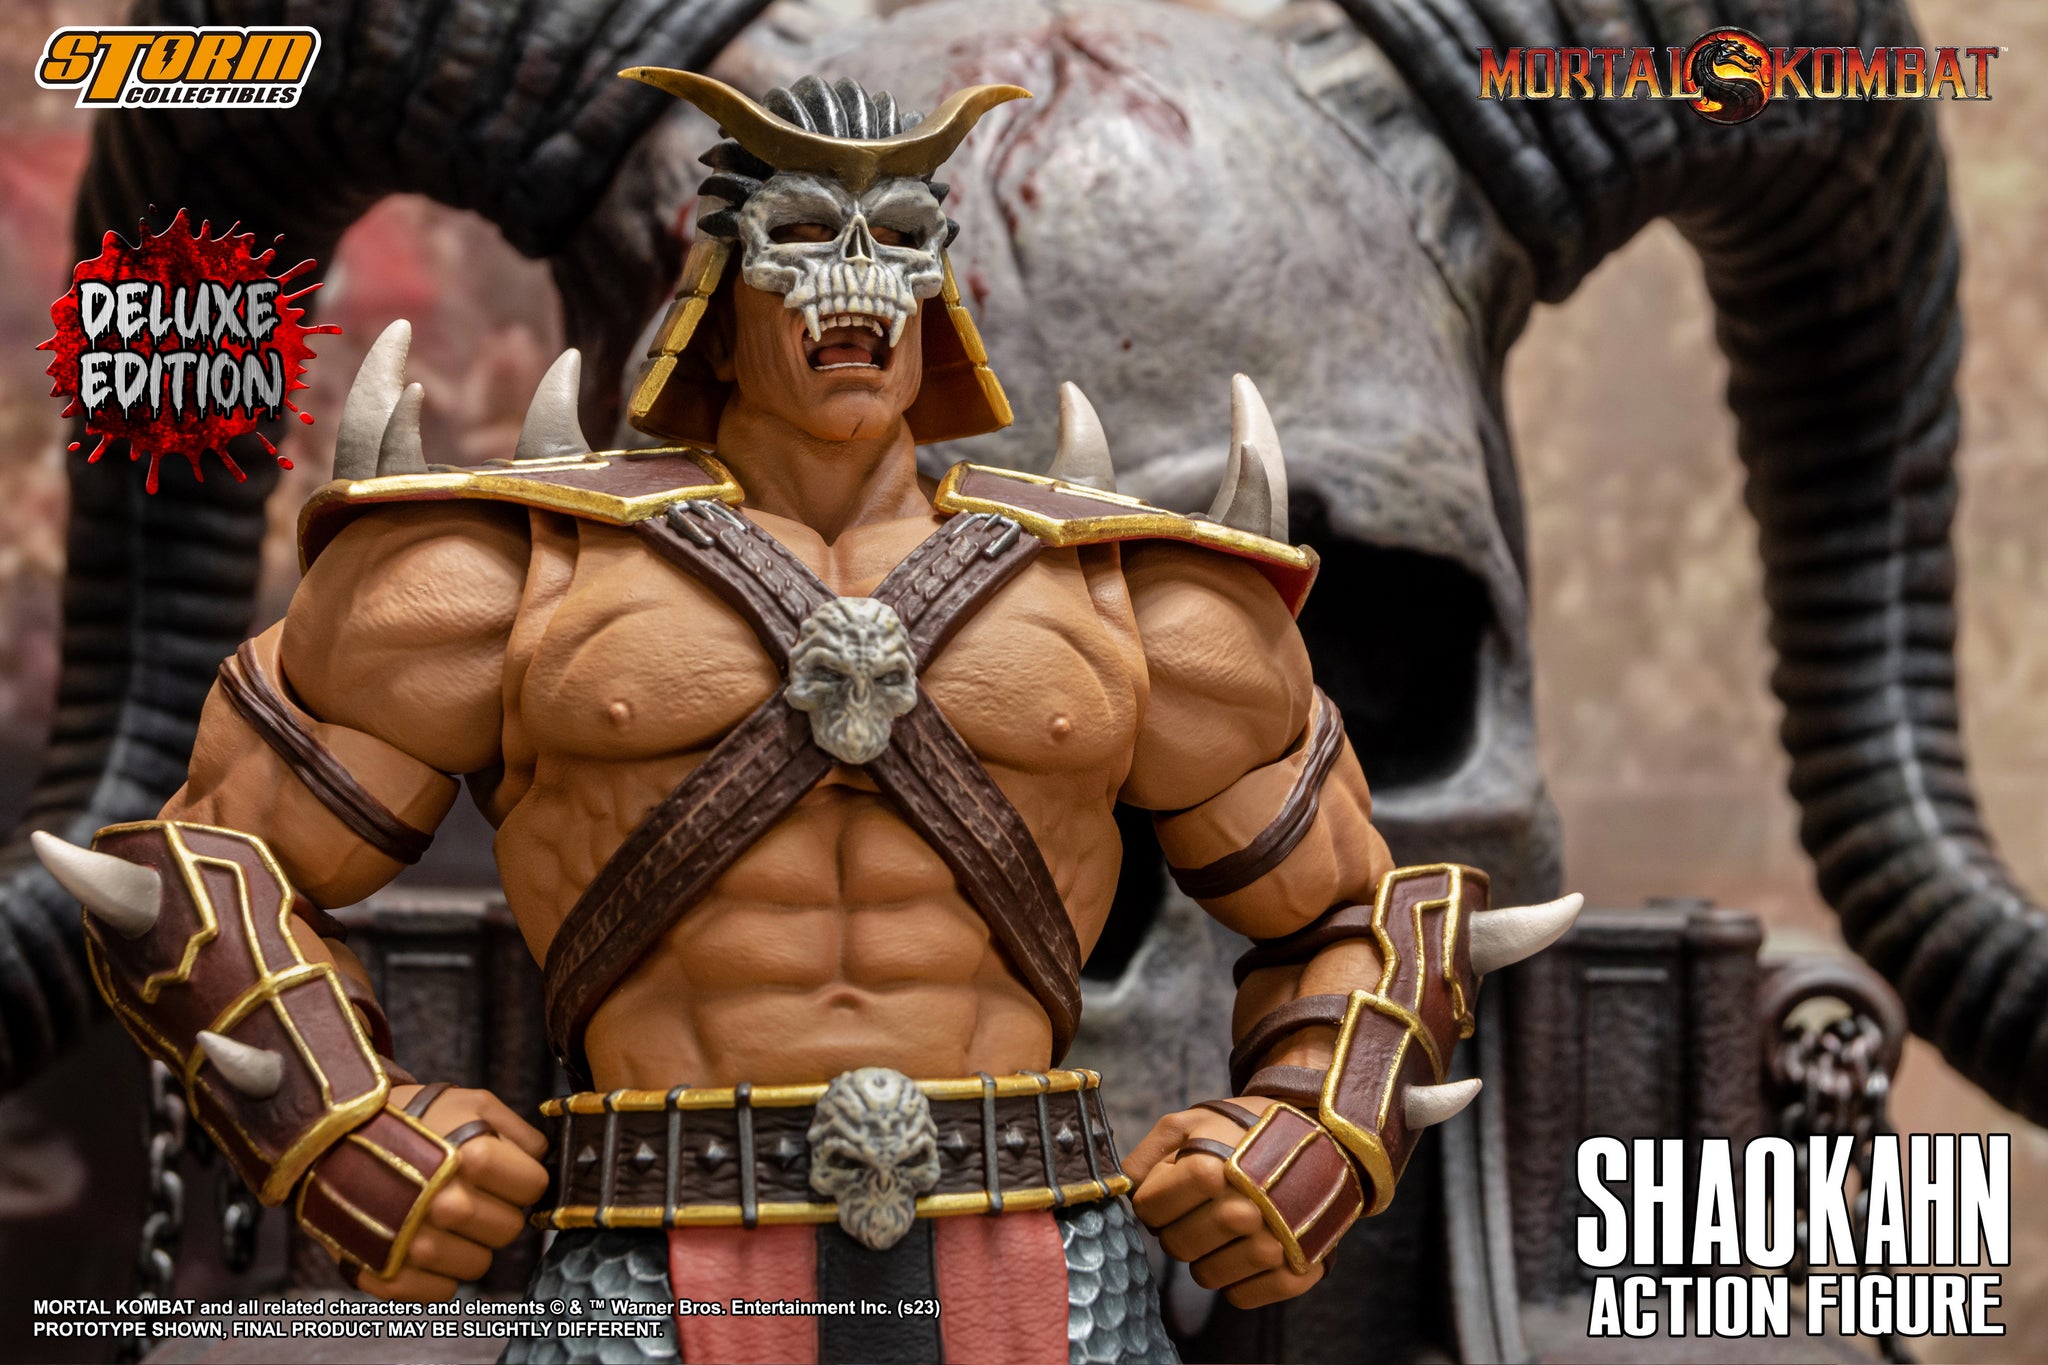 Shao Kahn Mortal Kombat Storm Collectibles Original - Prime Colecionismo -  Colecionando clientes, e acima de tudo bons amigos.